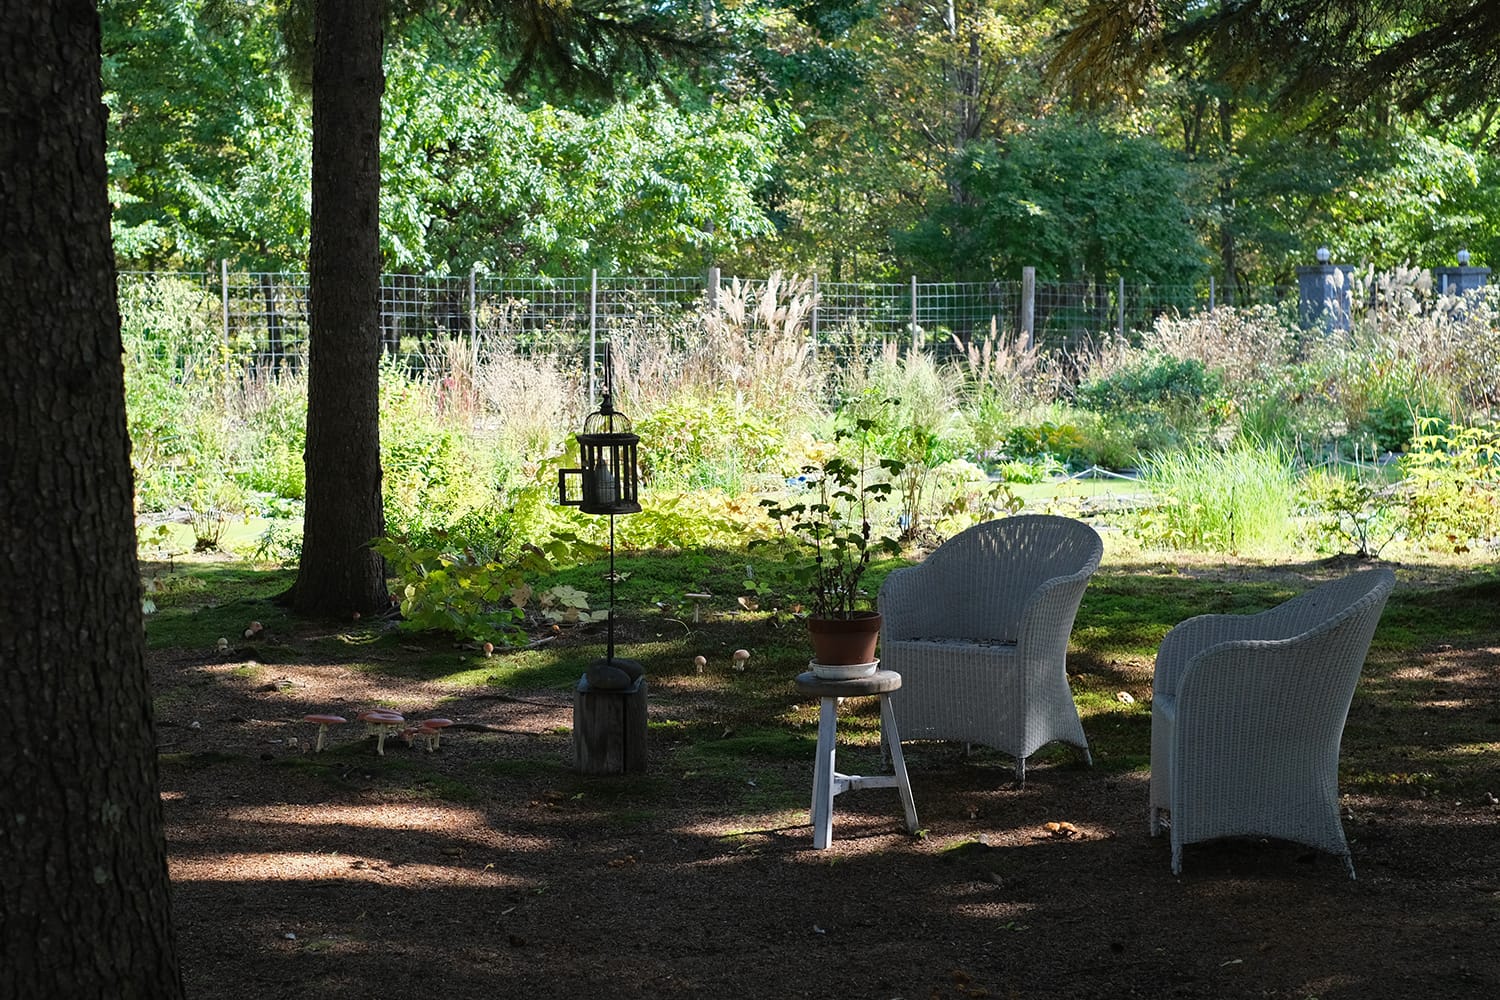 エゾマツトドマツの林床に生えるベニテングタケと白い椅子と鳥籠 ミオン農苑の秋の庭